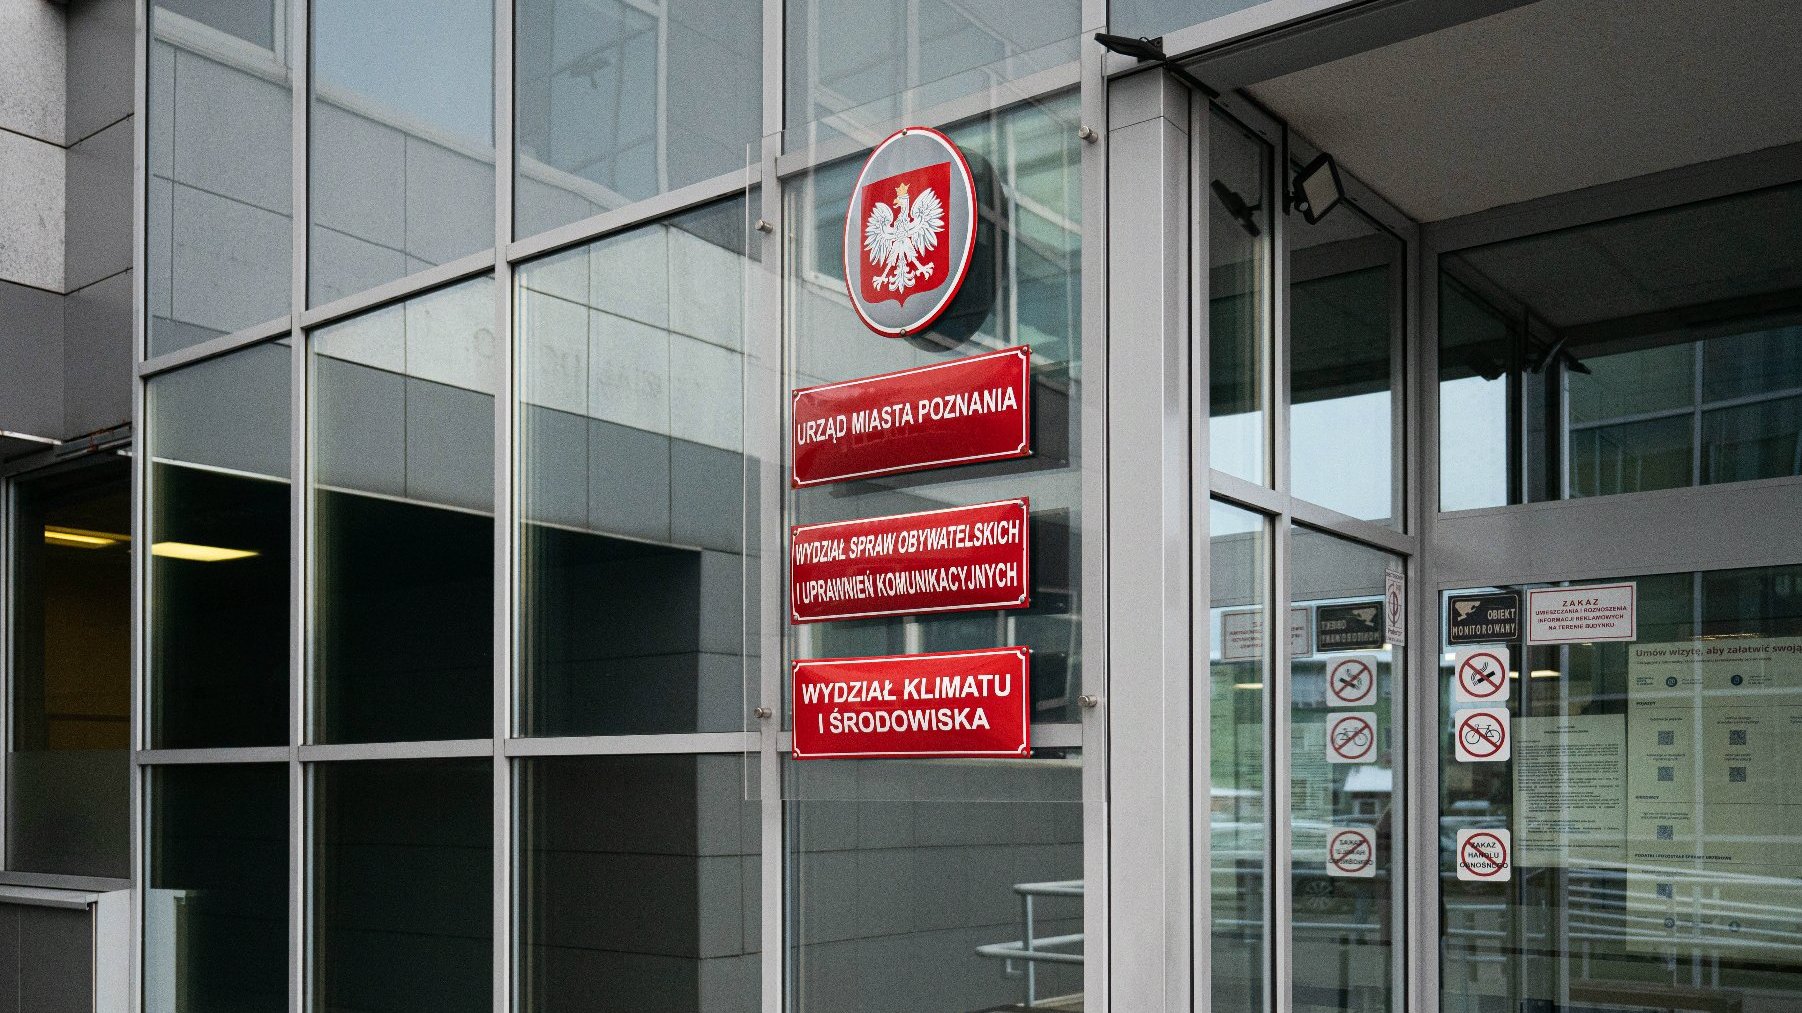 Galeria zdjęć przedstawia elewację budynku urzędu przy ul. Gronowej. Na fotografiach widać tablice z nazwami wydziałów i godło Polski.